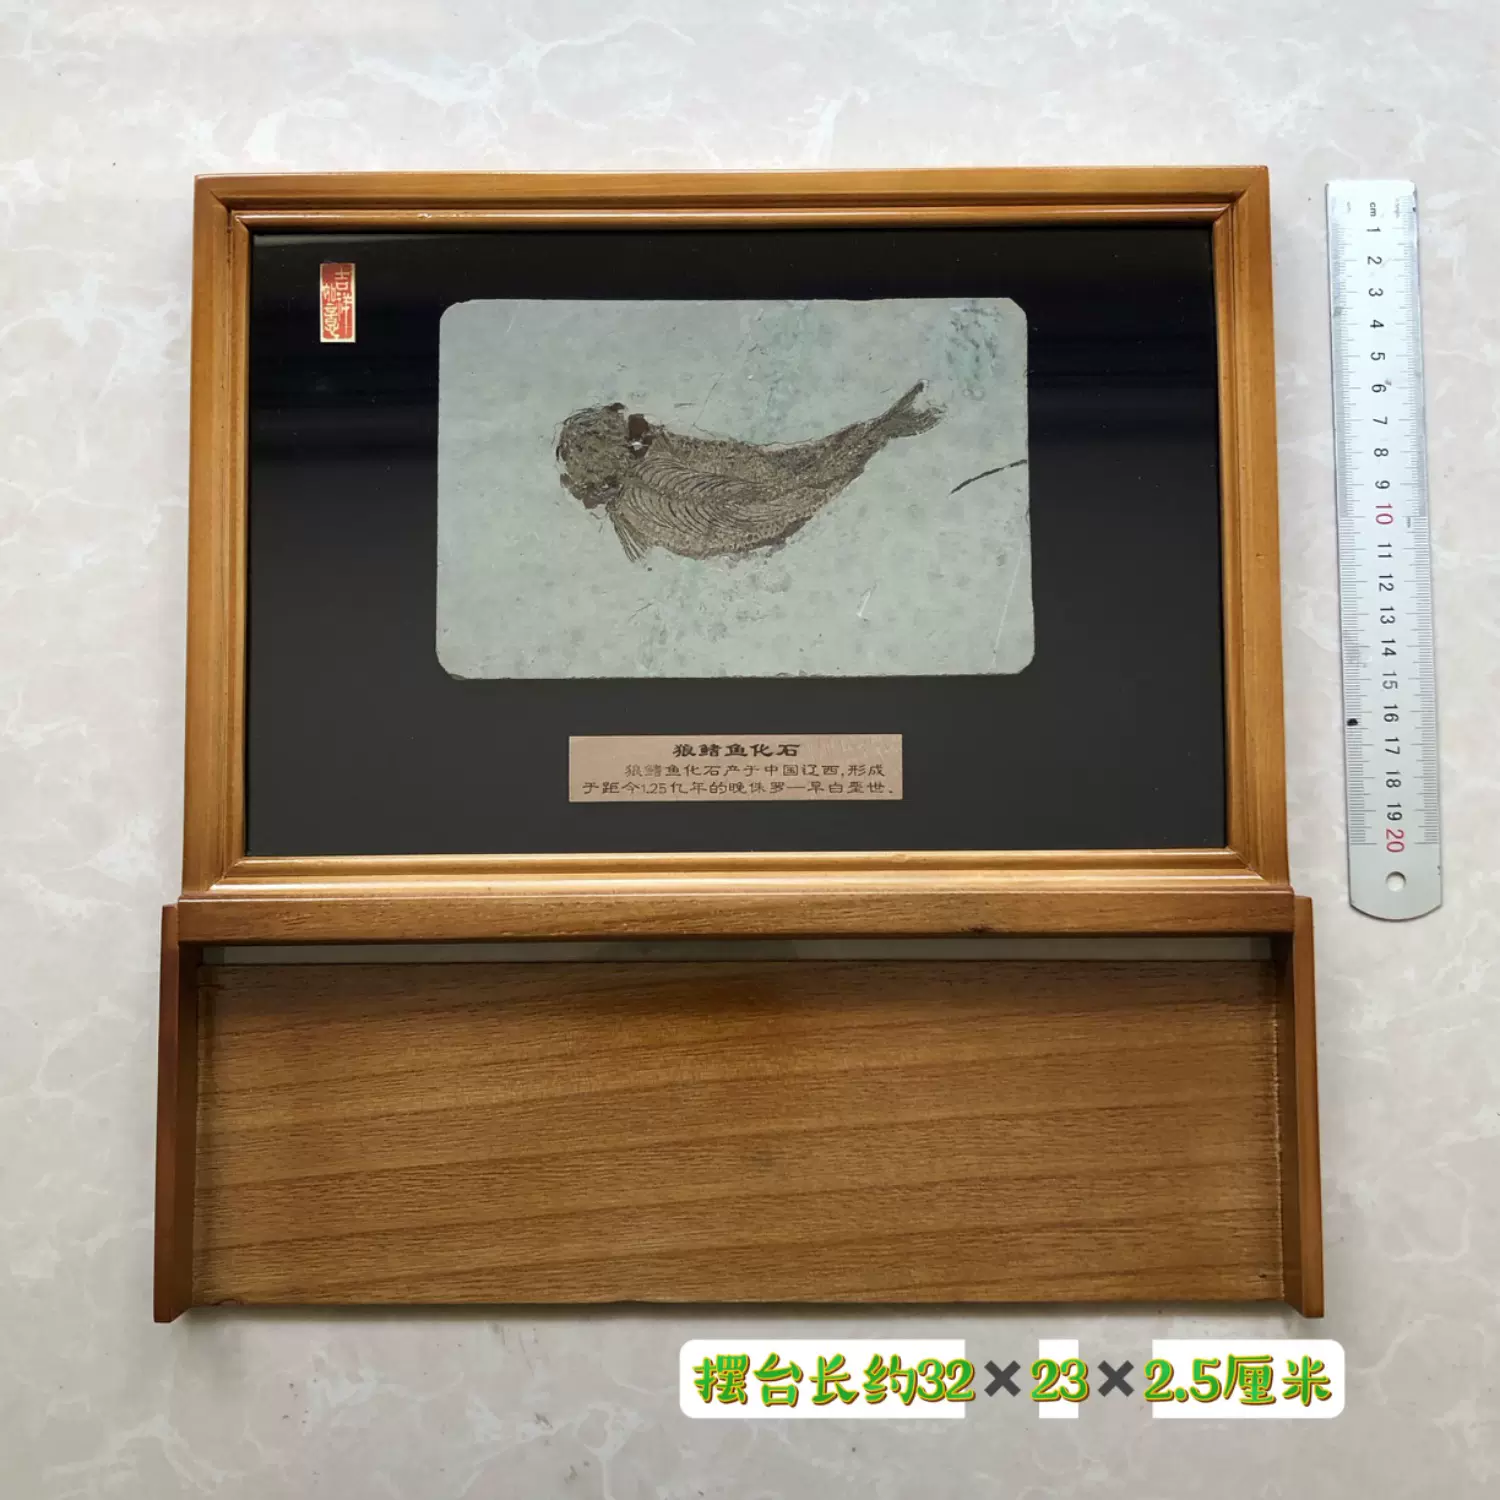 新款金刚山单条鱼化石辽西古生物化石科普朝阳标本原石礼品收藏级-Taobao